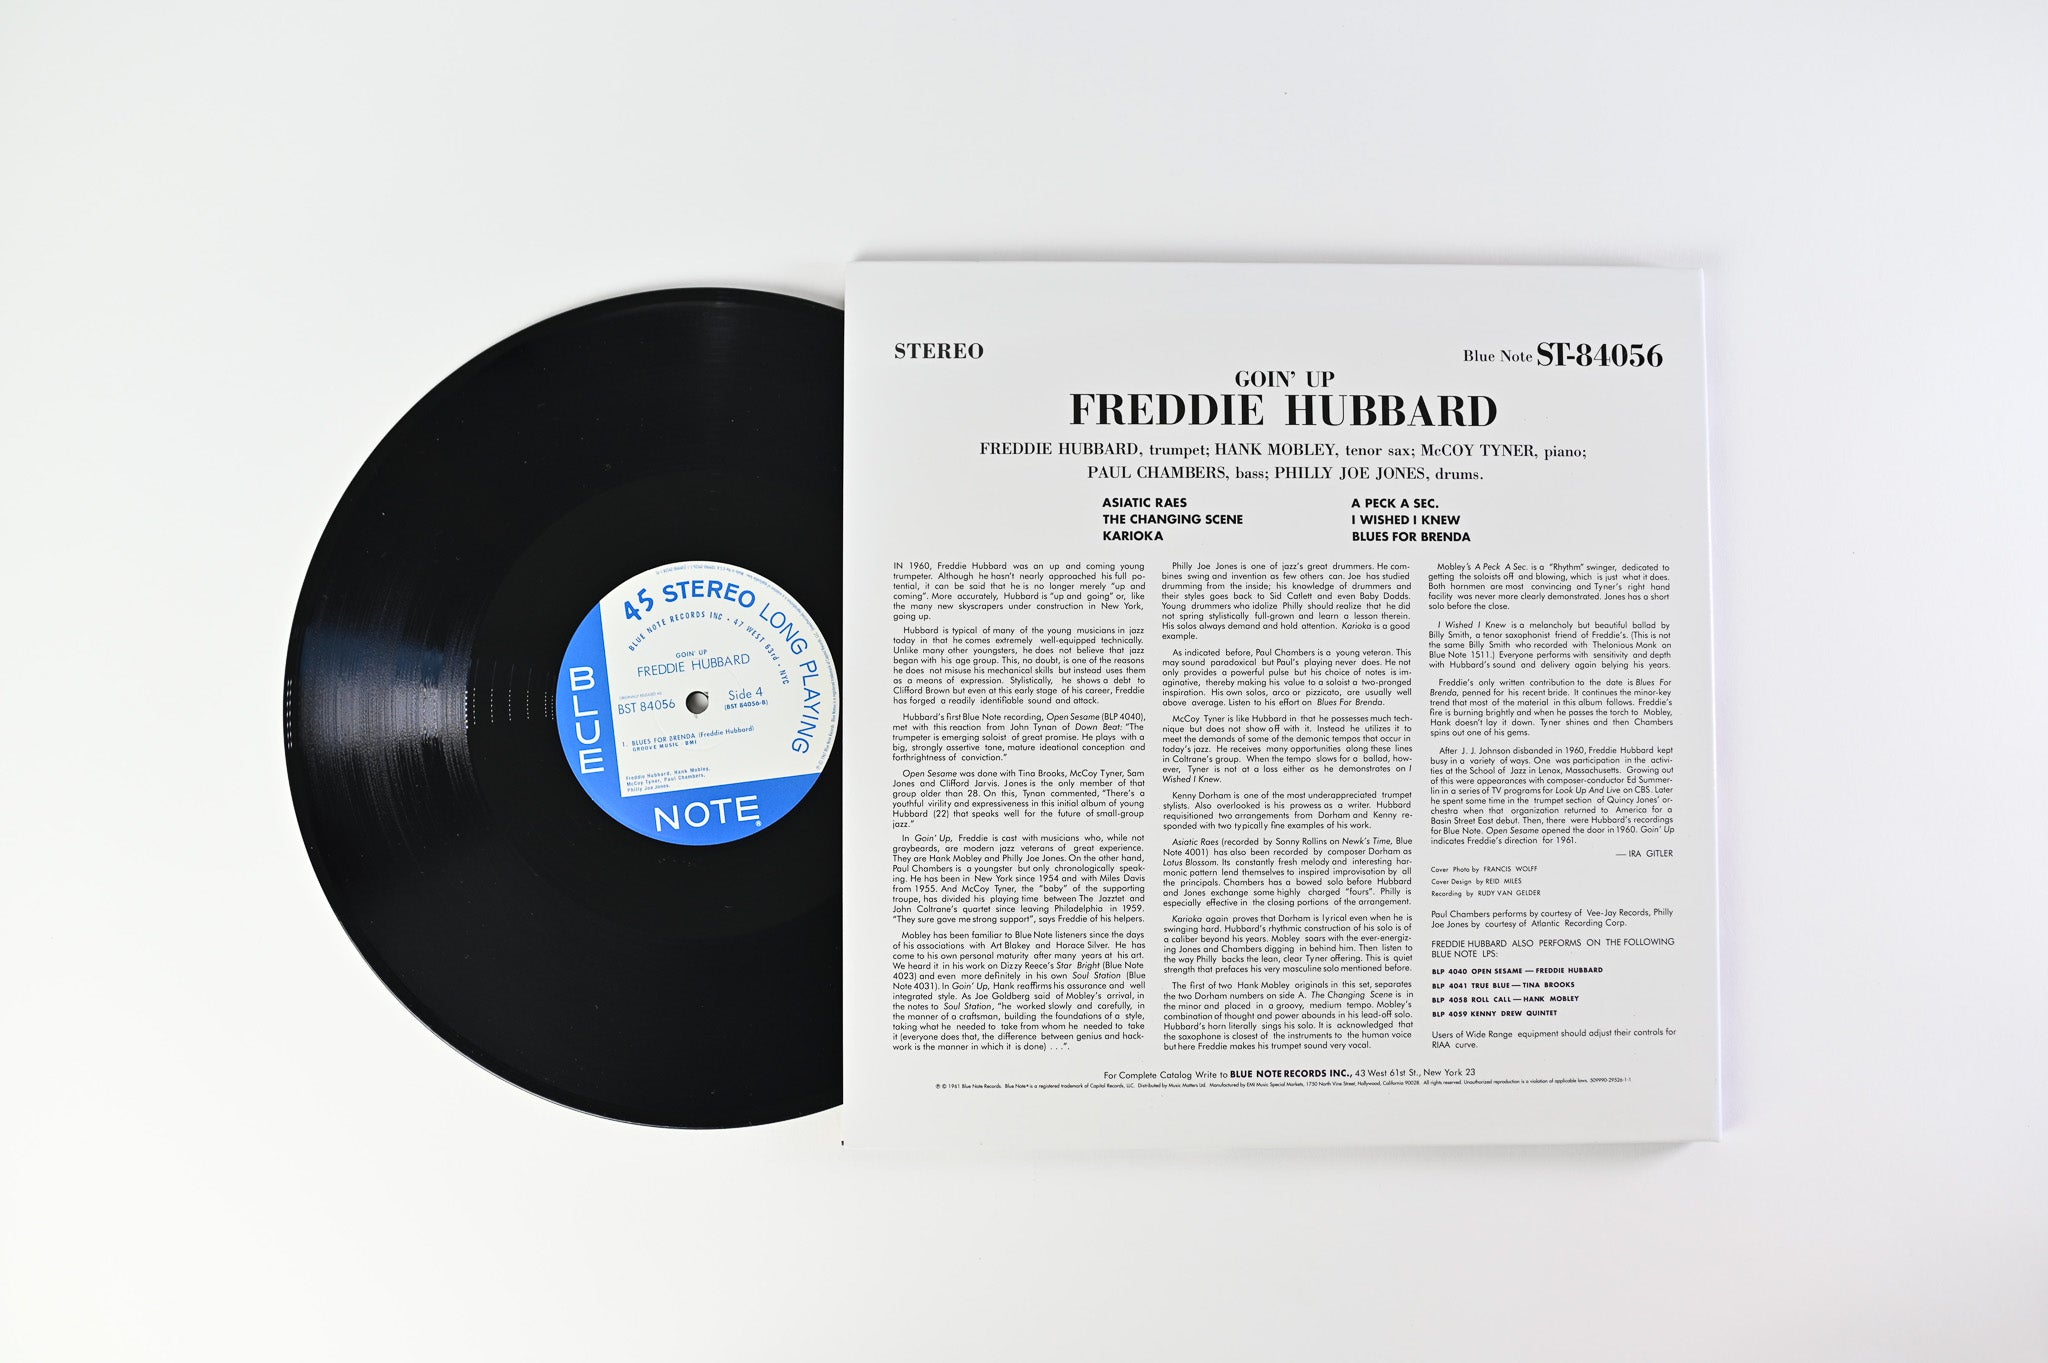 Freddie Hubbard - Goin' Up on Blue Note Music Matters Ltd Reissue 45 RPM